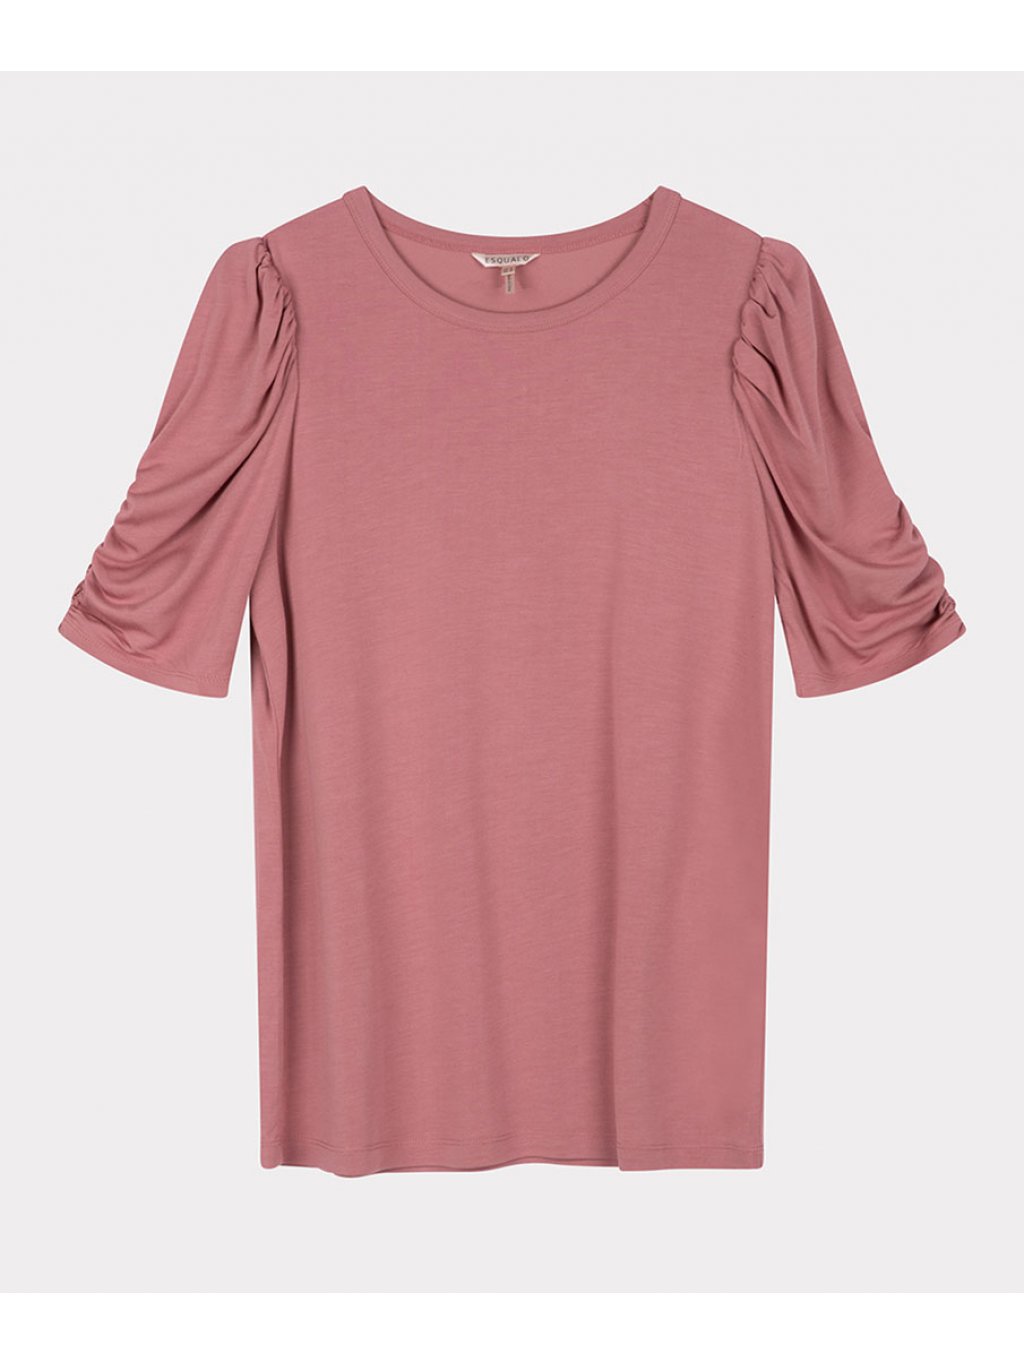 Tričko Esqualo 30510 růžové s řaseným rukávem